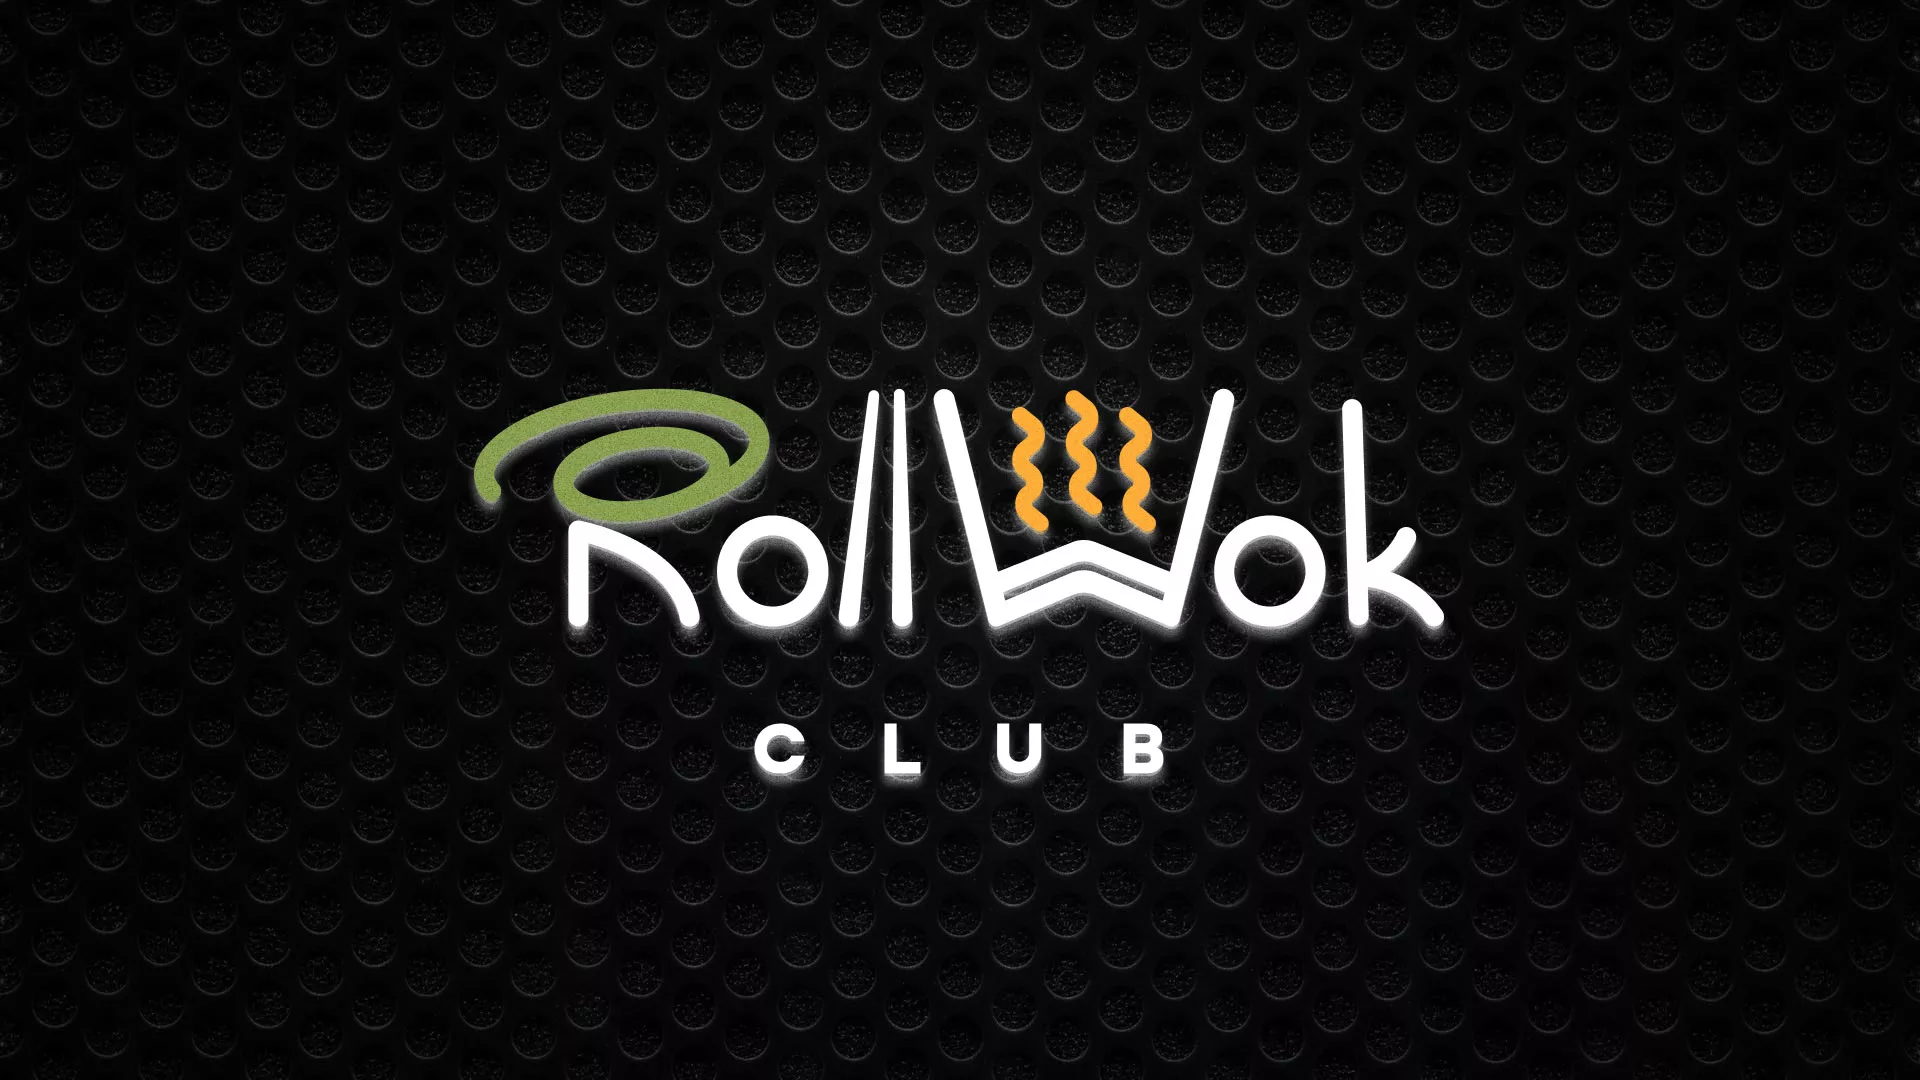 Брендирование торговых точек суши-бара «Roll Wok Club» в Алексеевке